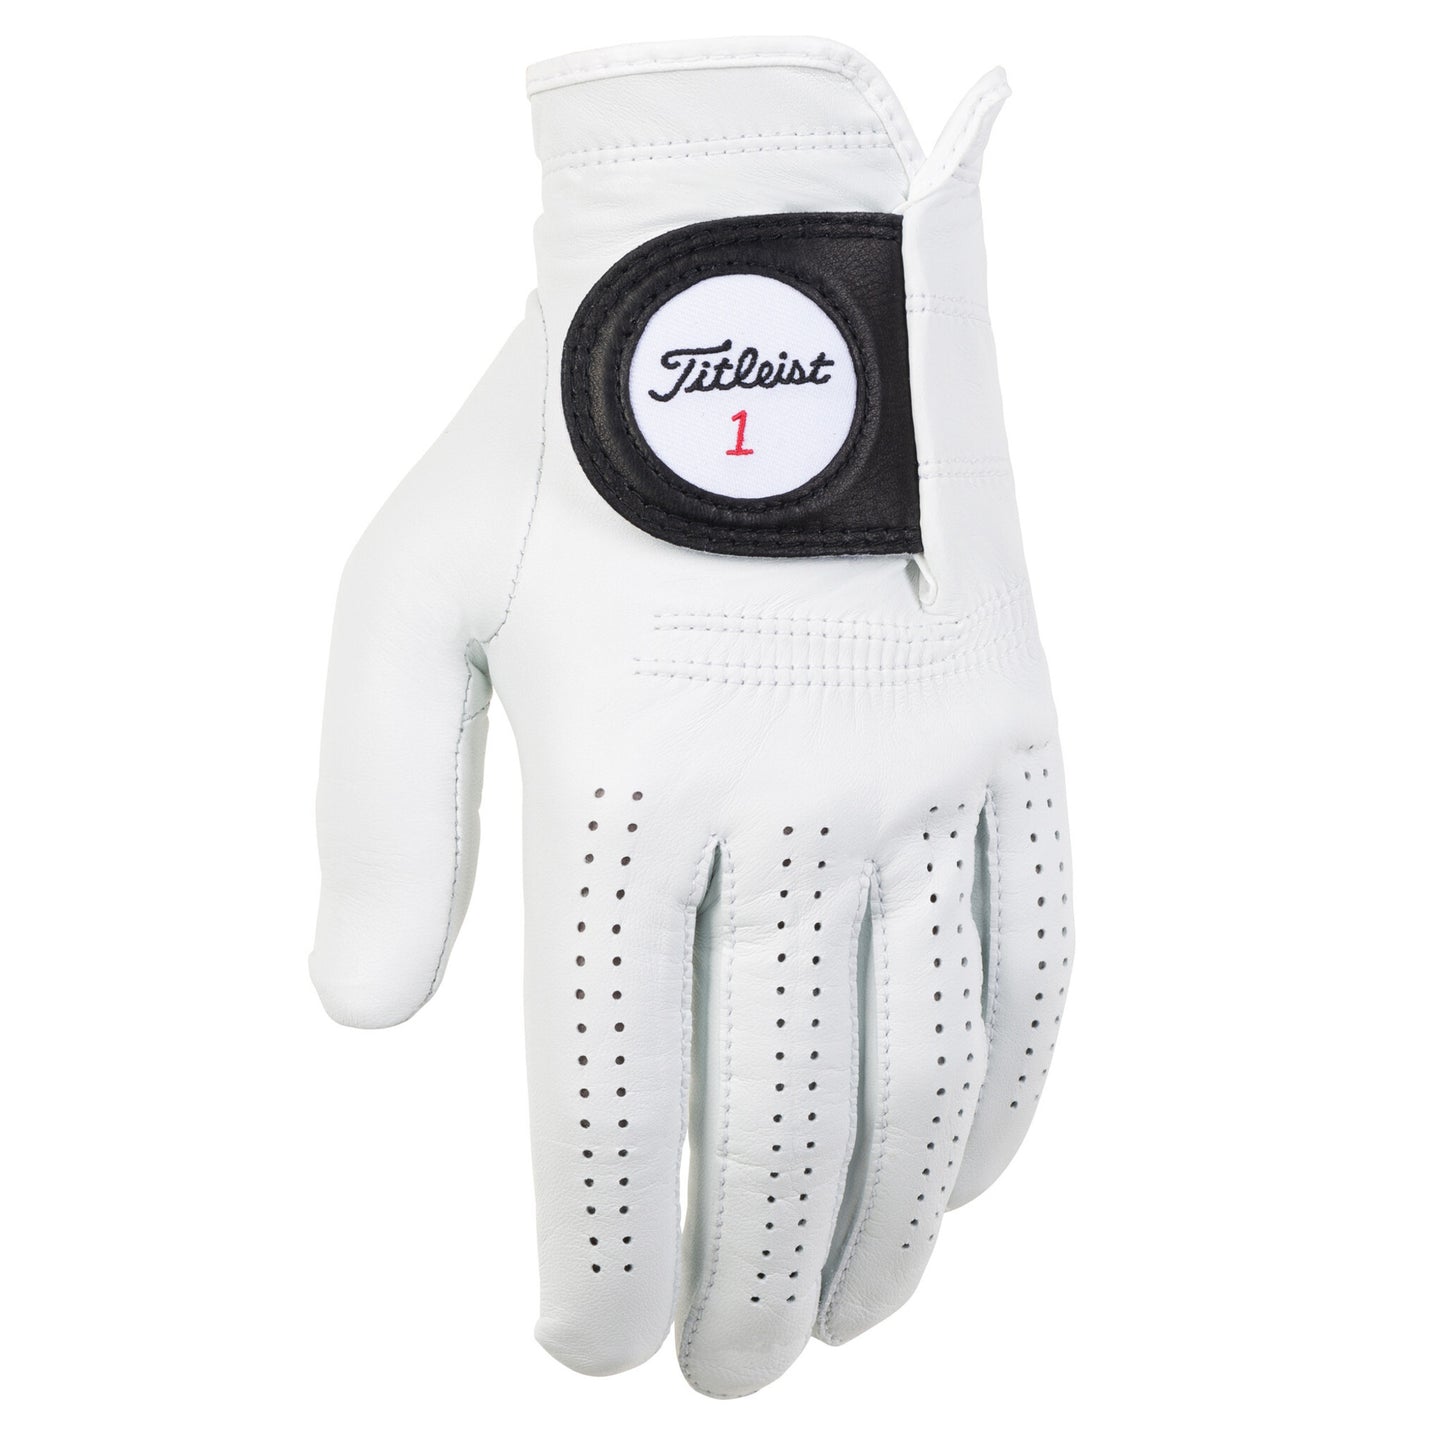 New - Titleist Men's Players Left Hand Golf Glove